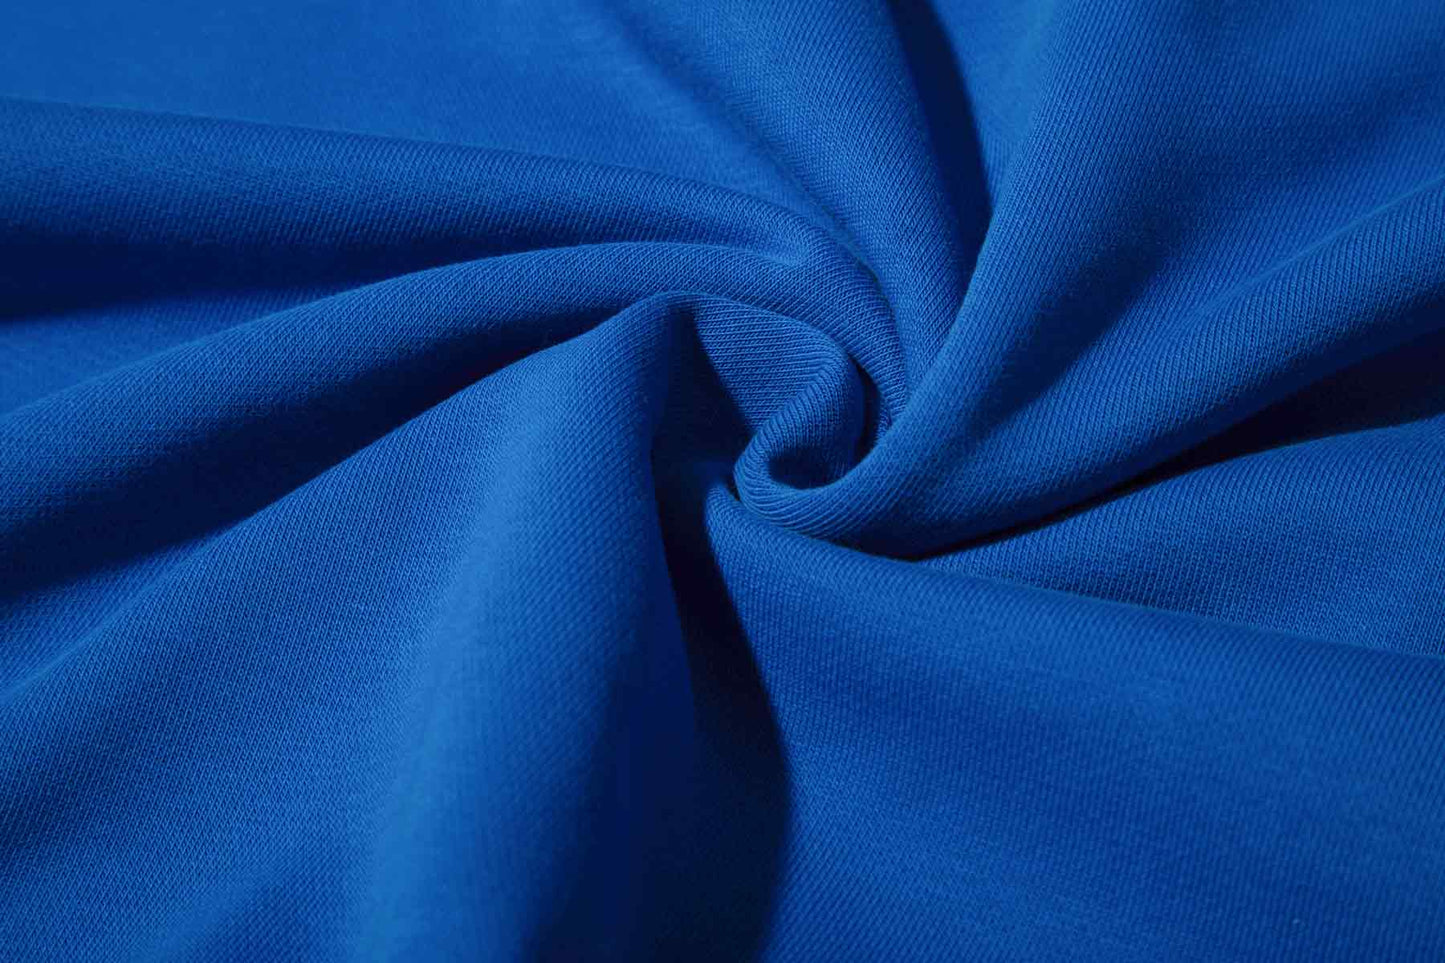 Möbius Loop Sweatshirt Blue